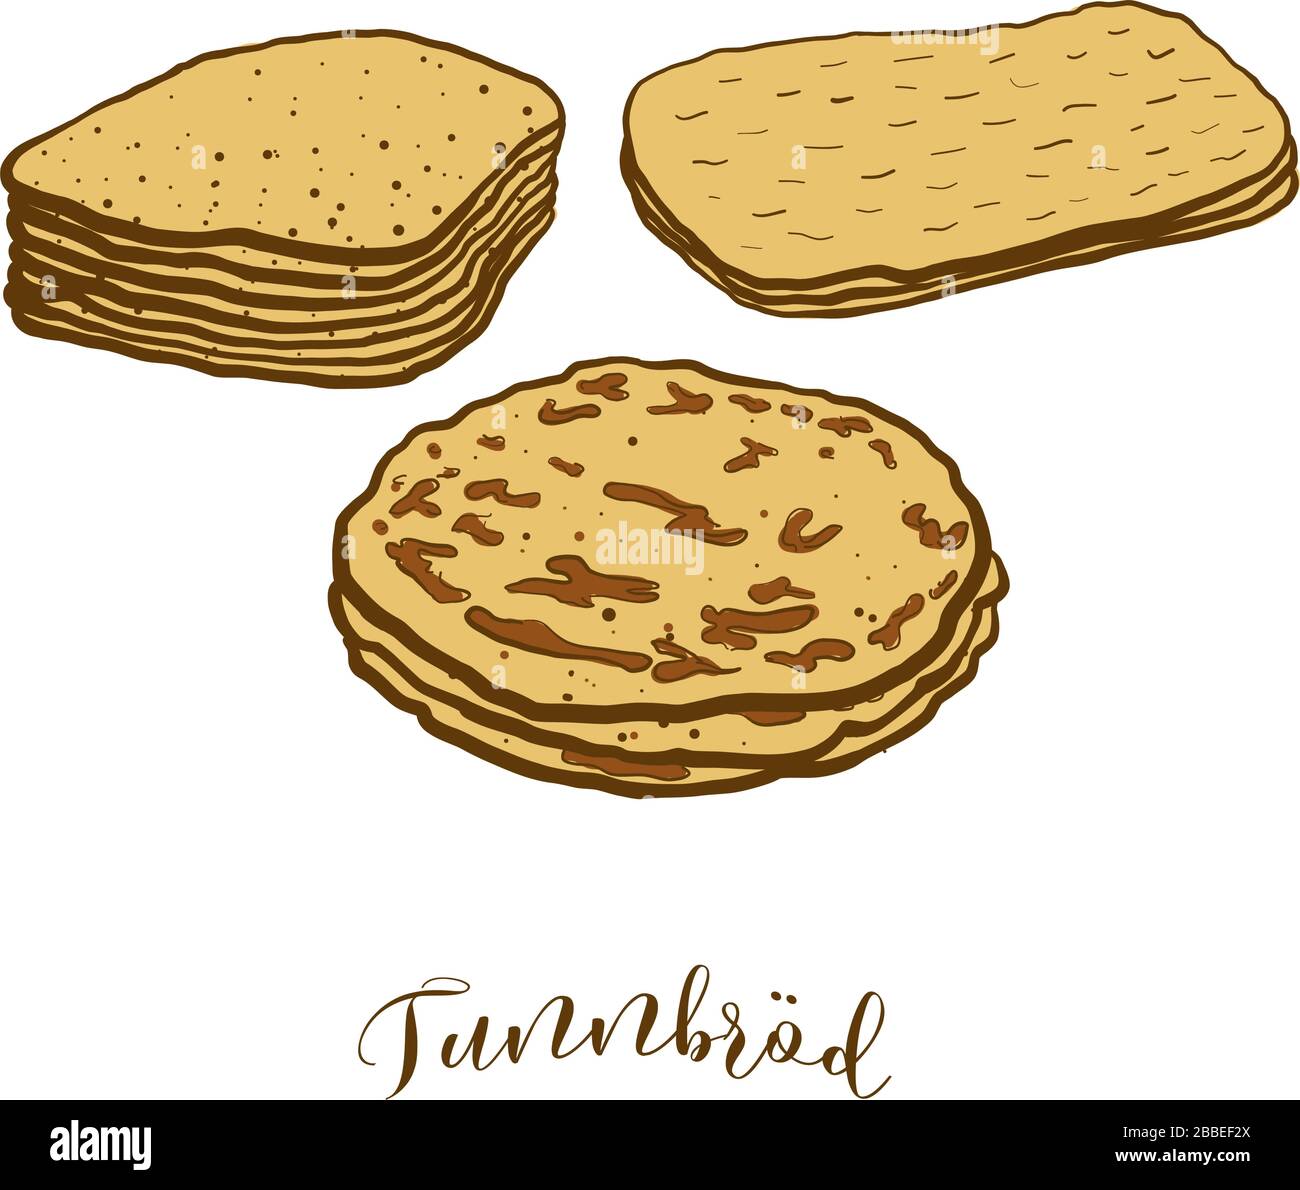 Dessin coloré de pain Tunnbröd. Illustration vectorielle de plats à base de pain plat, généralement connus en Suède. Croquis de pain colorés. Illustration de Vecteur